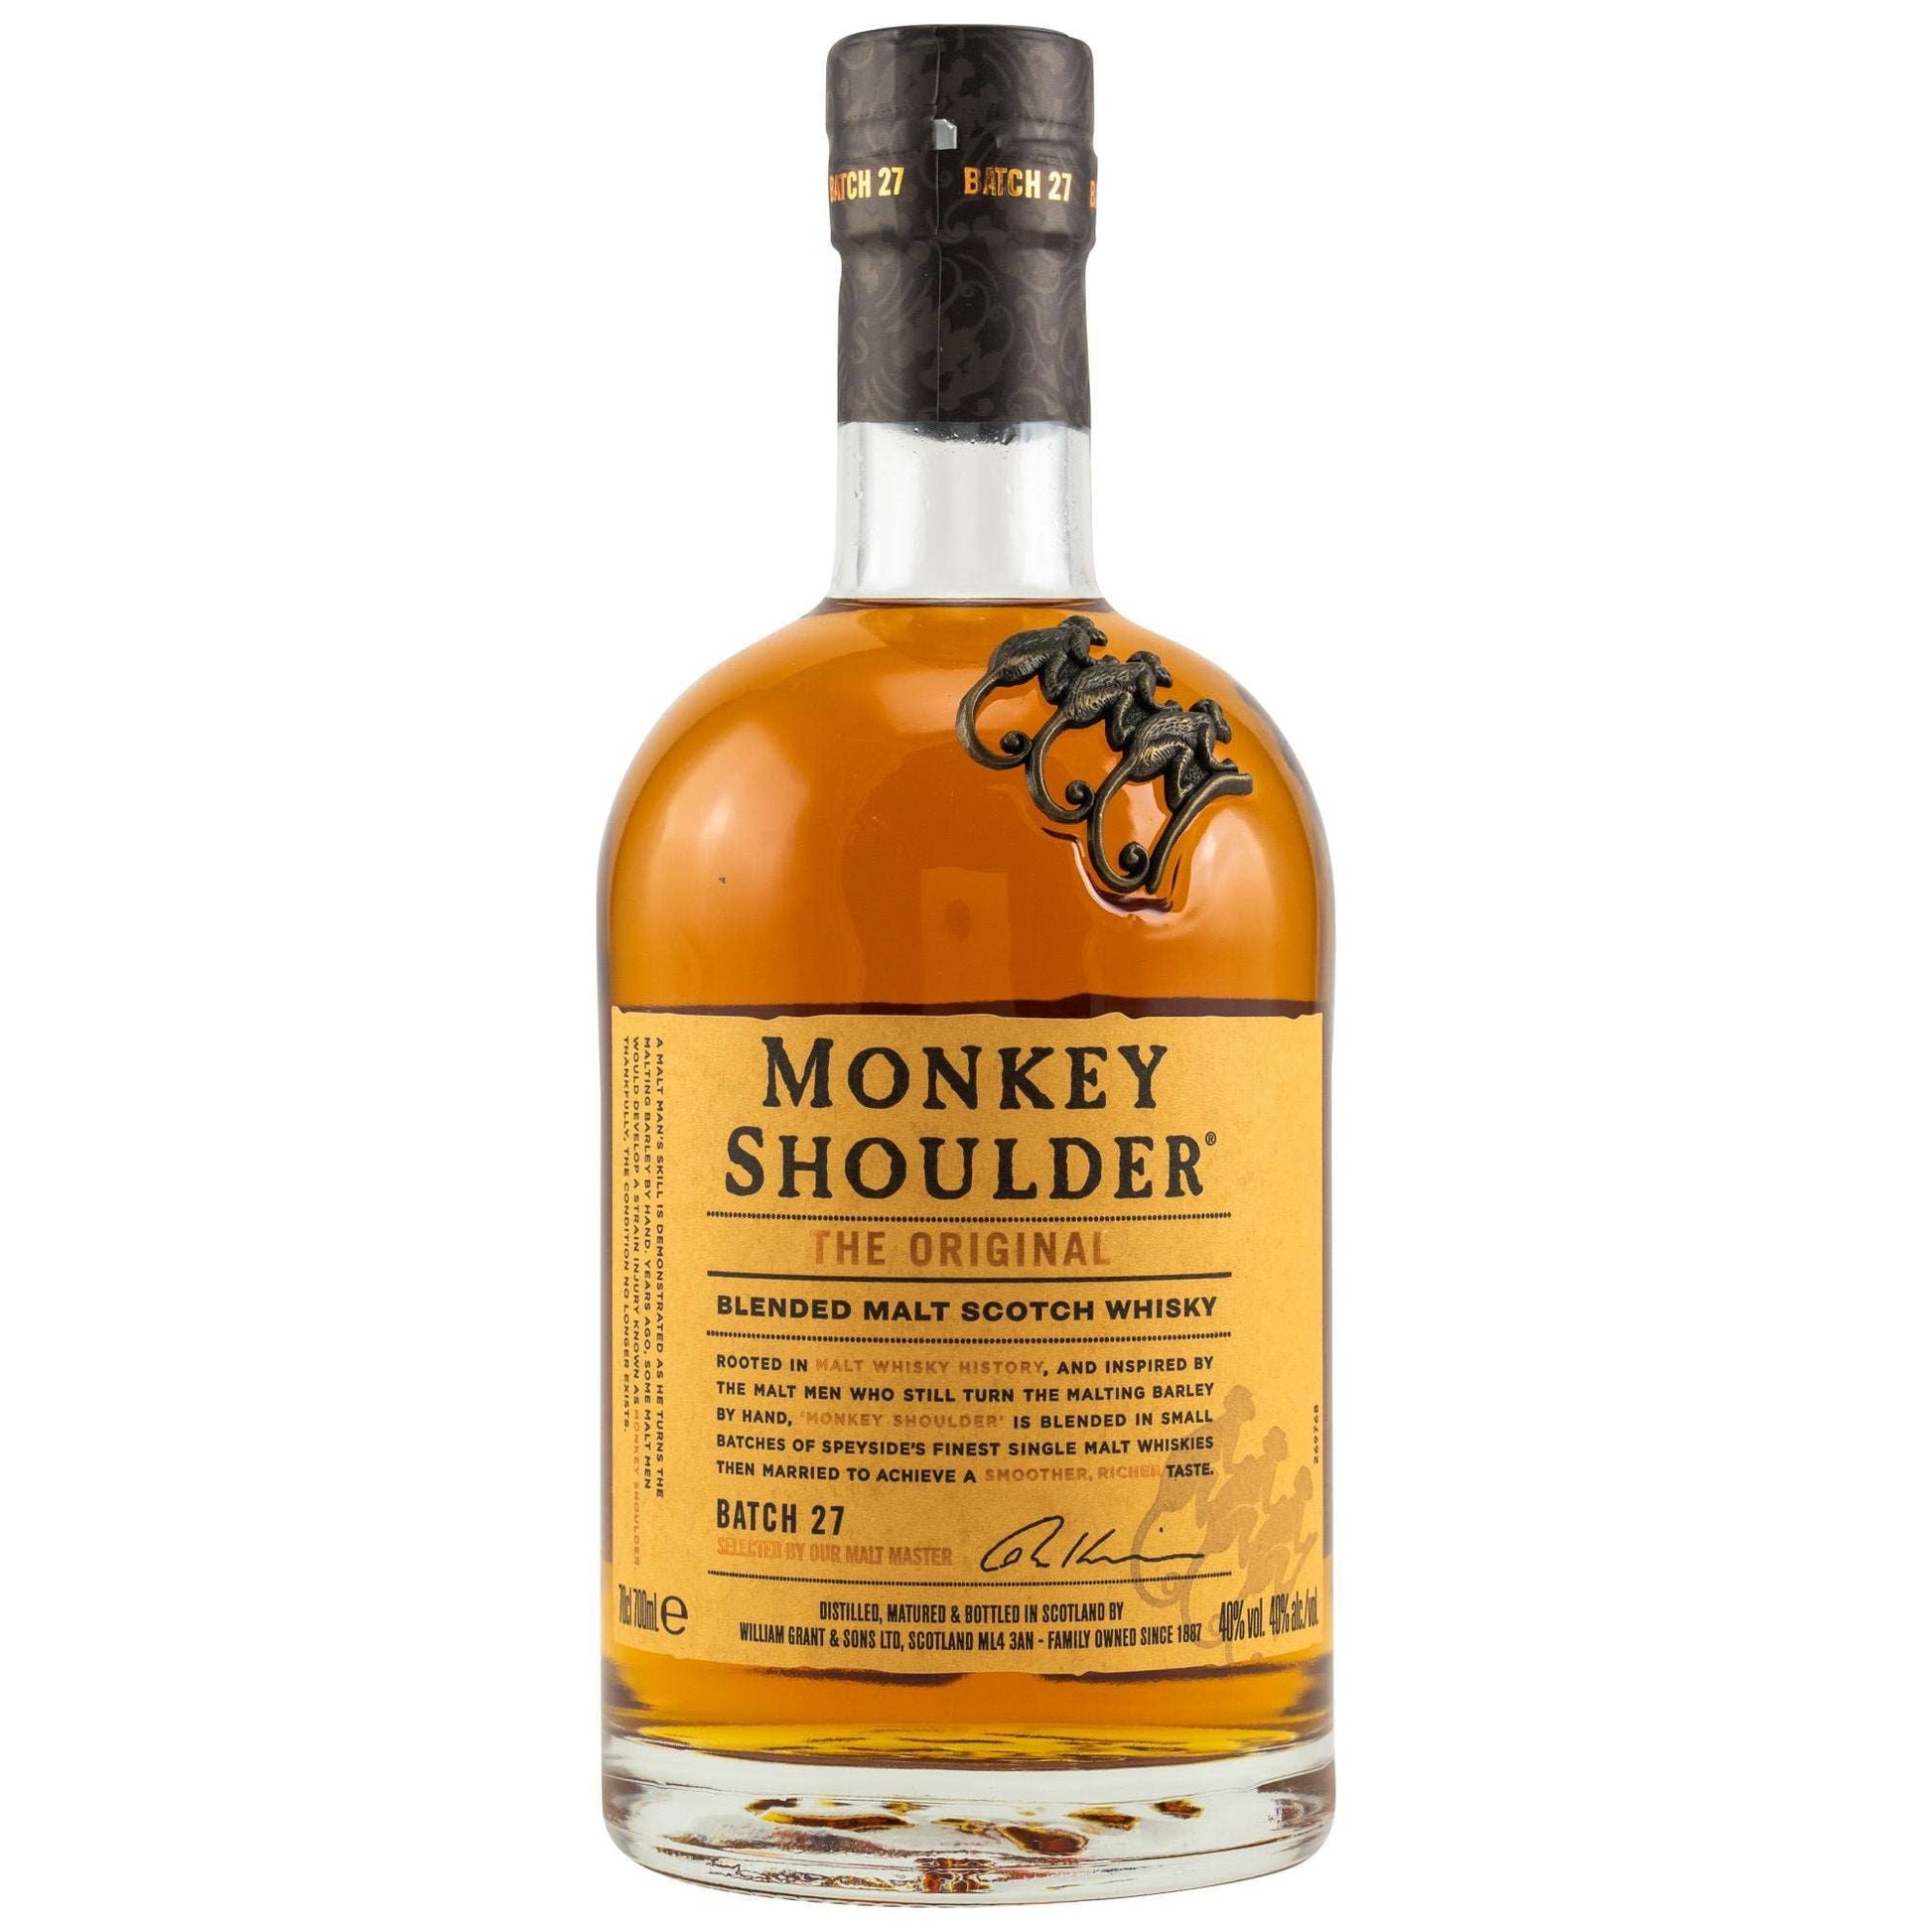 Monkey Shoulder The Original - Online kaufen | getabottle.de – GET A BOTTLE